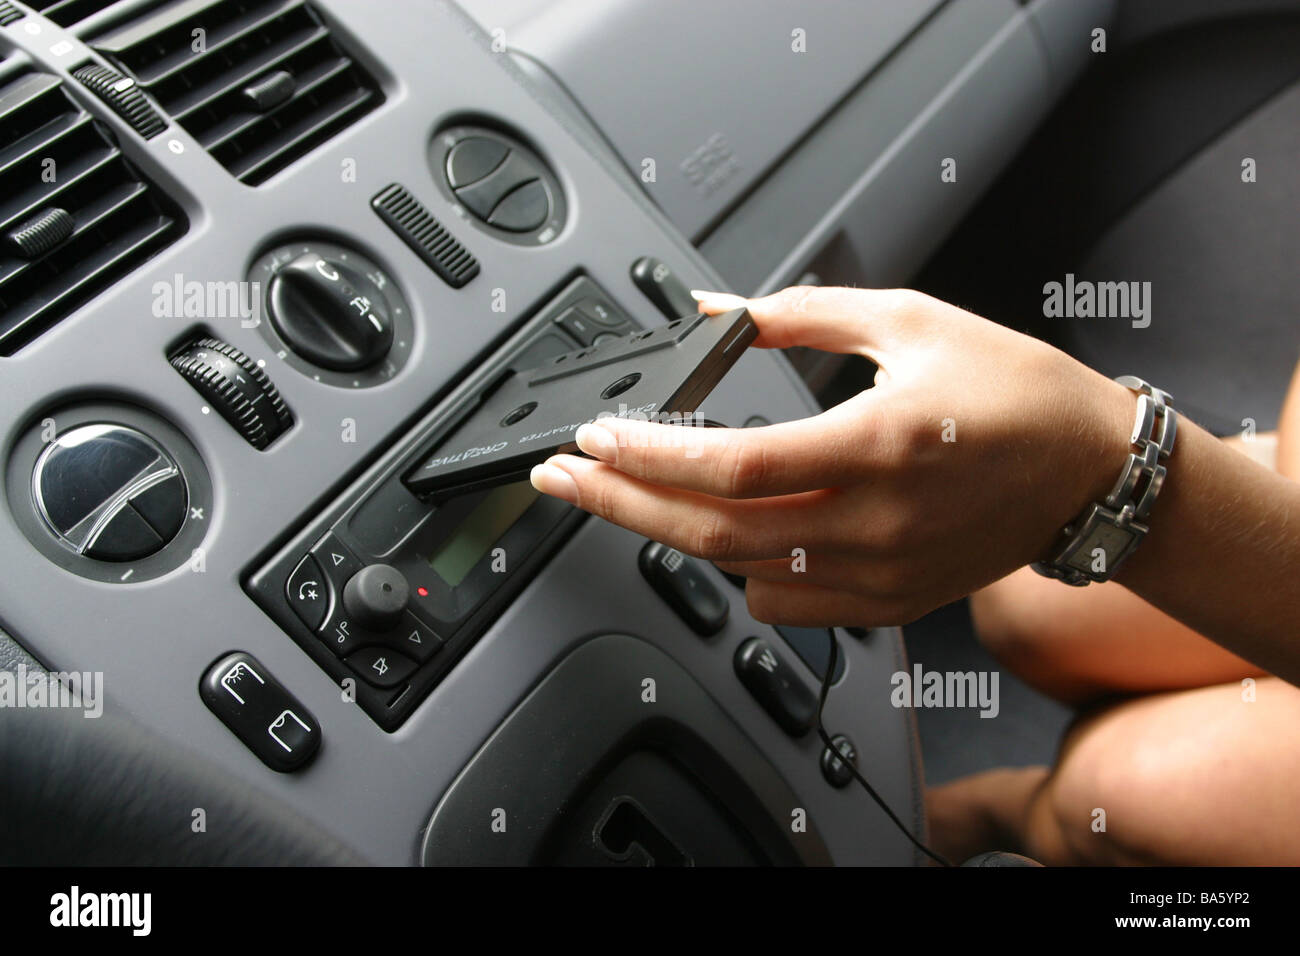 https://c8.alamy.com/compde/ba5yp2/auto-drinnen-frau-hand-adapter-kassette-auto-radio-kassette-welle-setzt-im-detail-keine-eigenschaft-version-fahrzeug-autofahren-cockpit-ba5yp2.jpg